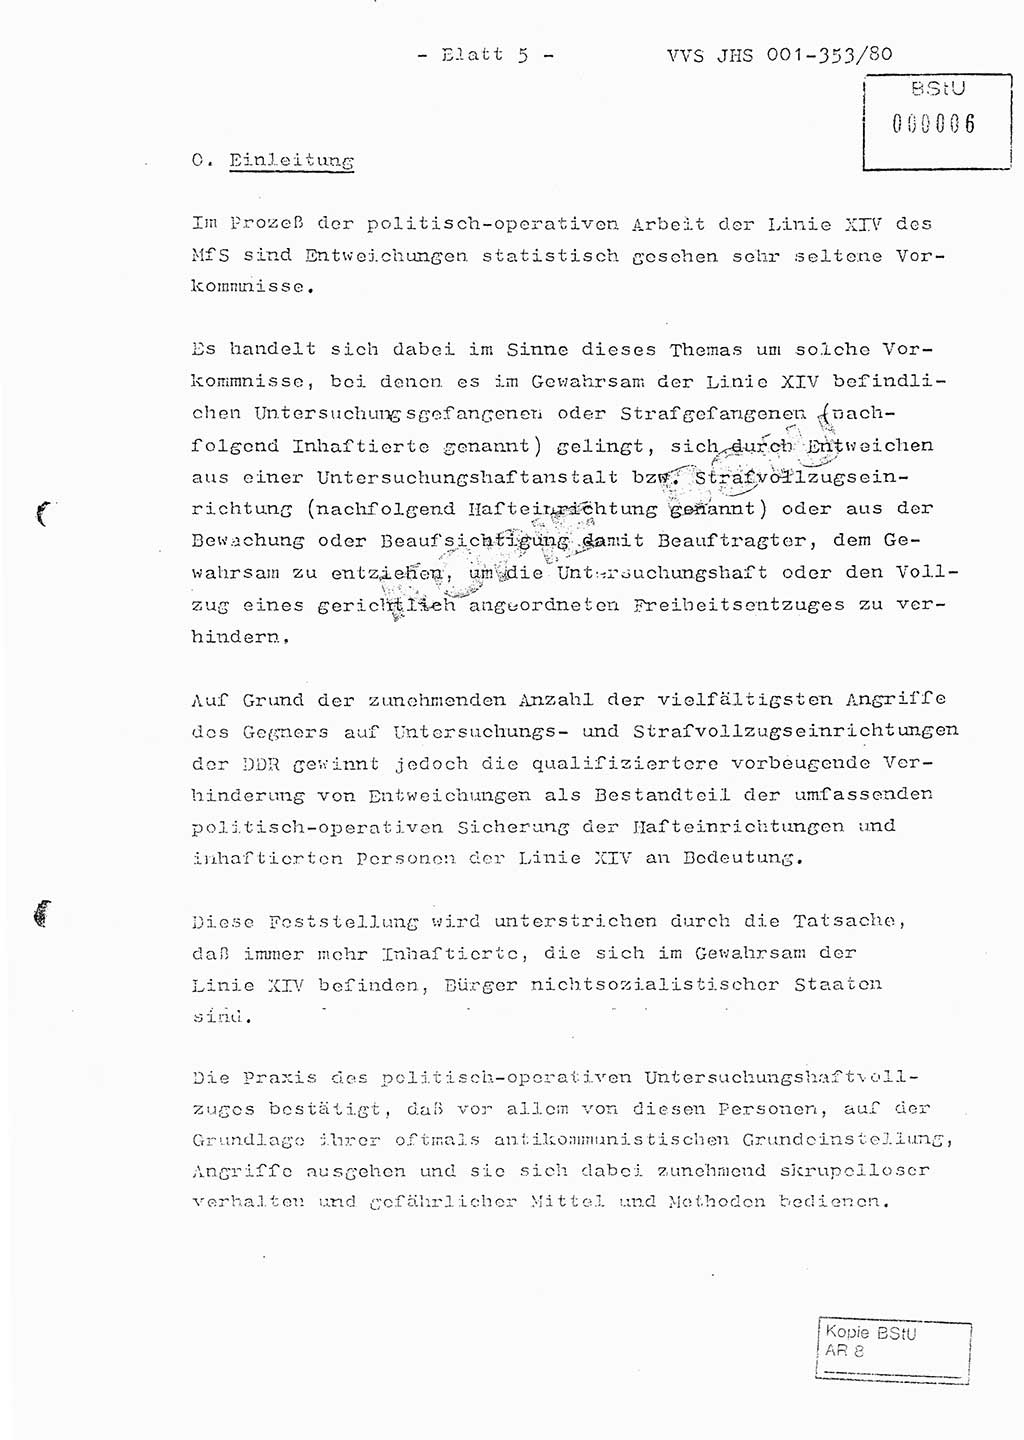 Diplomarbeit Hauptmann Joachim Klaumünzner (Abt. ⅩⅣ), Ministerium für Staatssicherheit (MfS) [Deutsche Demokratische Republik (DDR)], Juristische Hochschule (JHS), Vertrauliche Verschlußsache (VVS) o001-353/80, Potsdam 1980, Blatt 5 (Dipl.-Arb. MfS DDR JHS VVS o001-353/80 1980, Bl. 5)